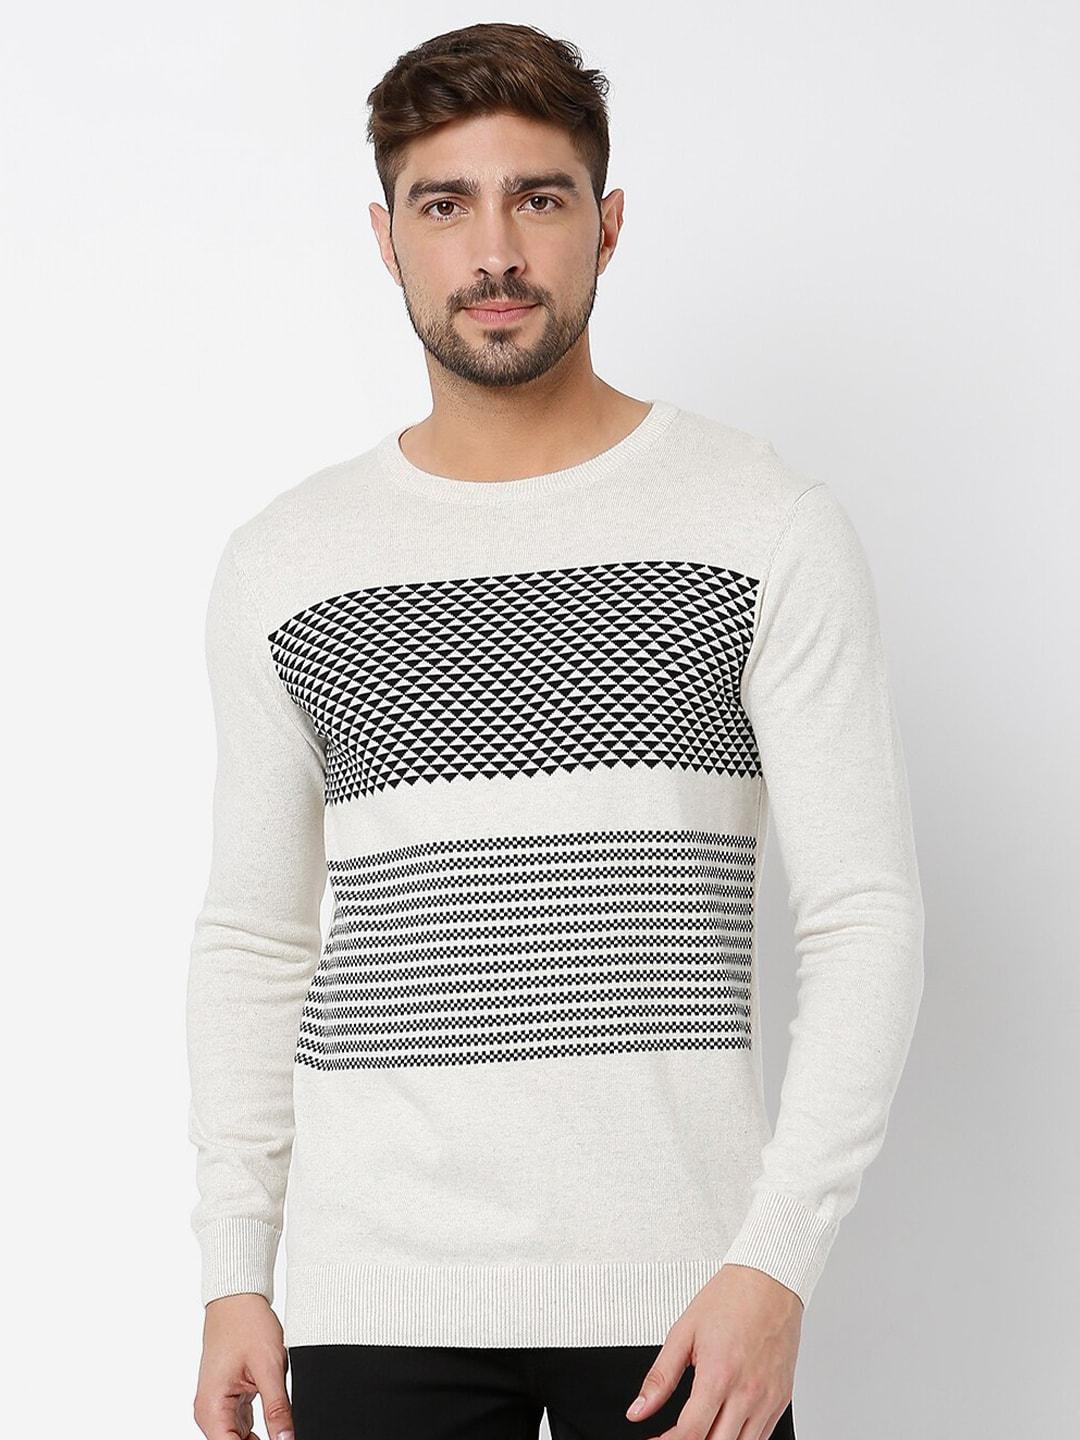 mufti-men-white-&-black-round-neck-full-sleeve-sweater